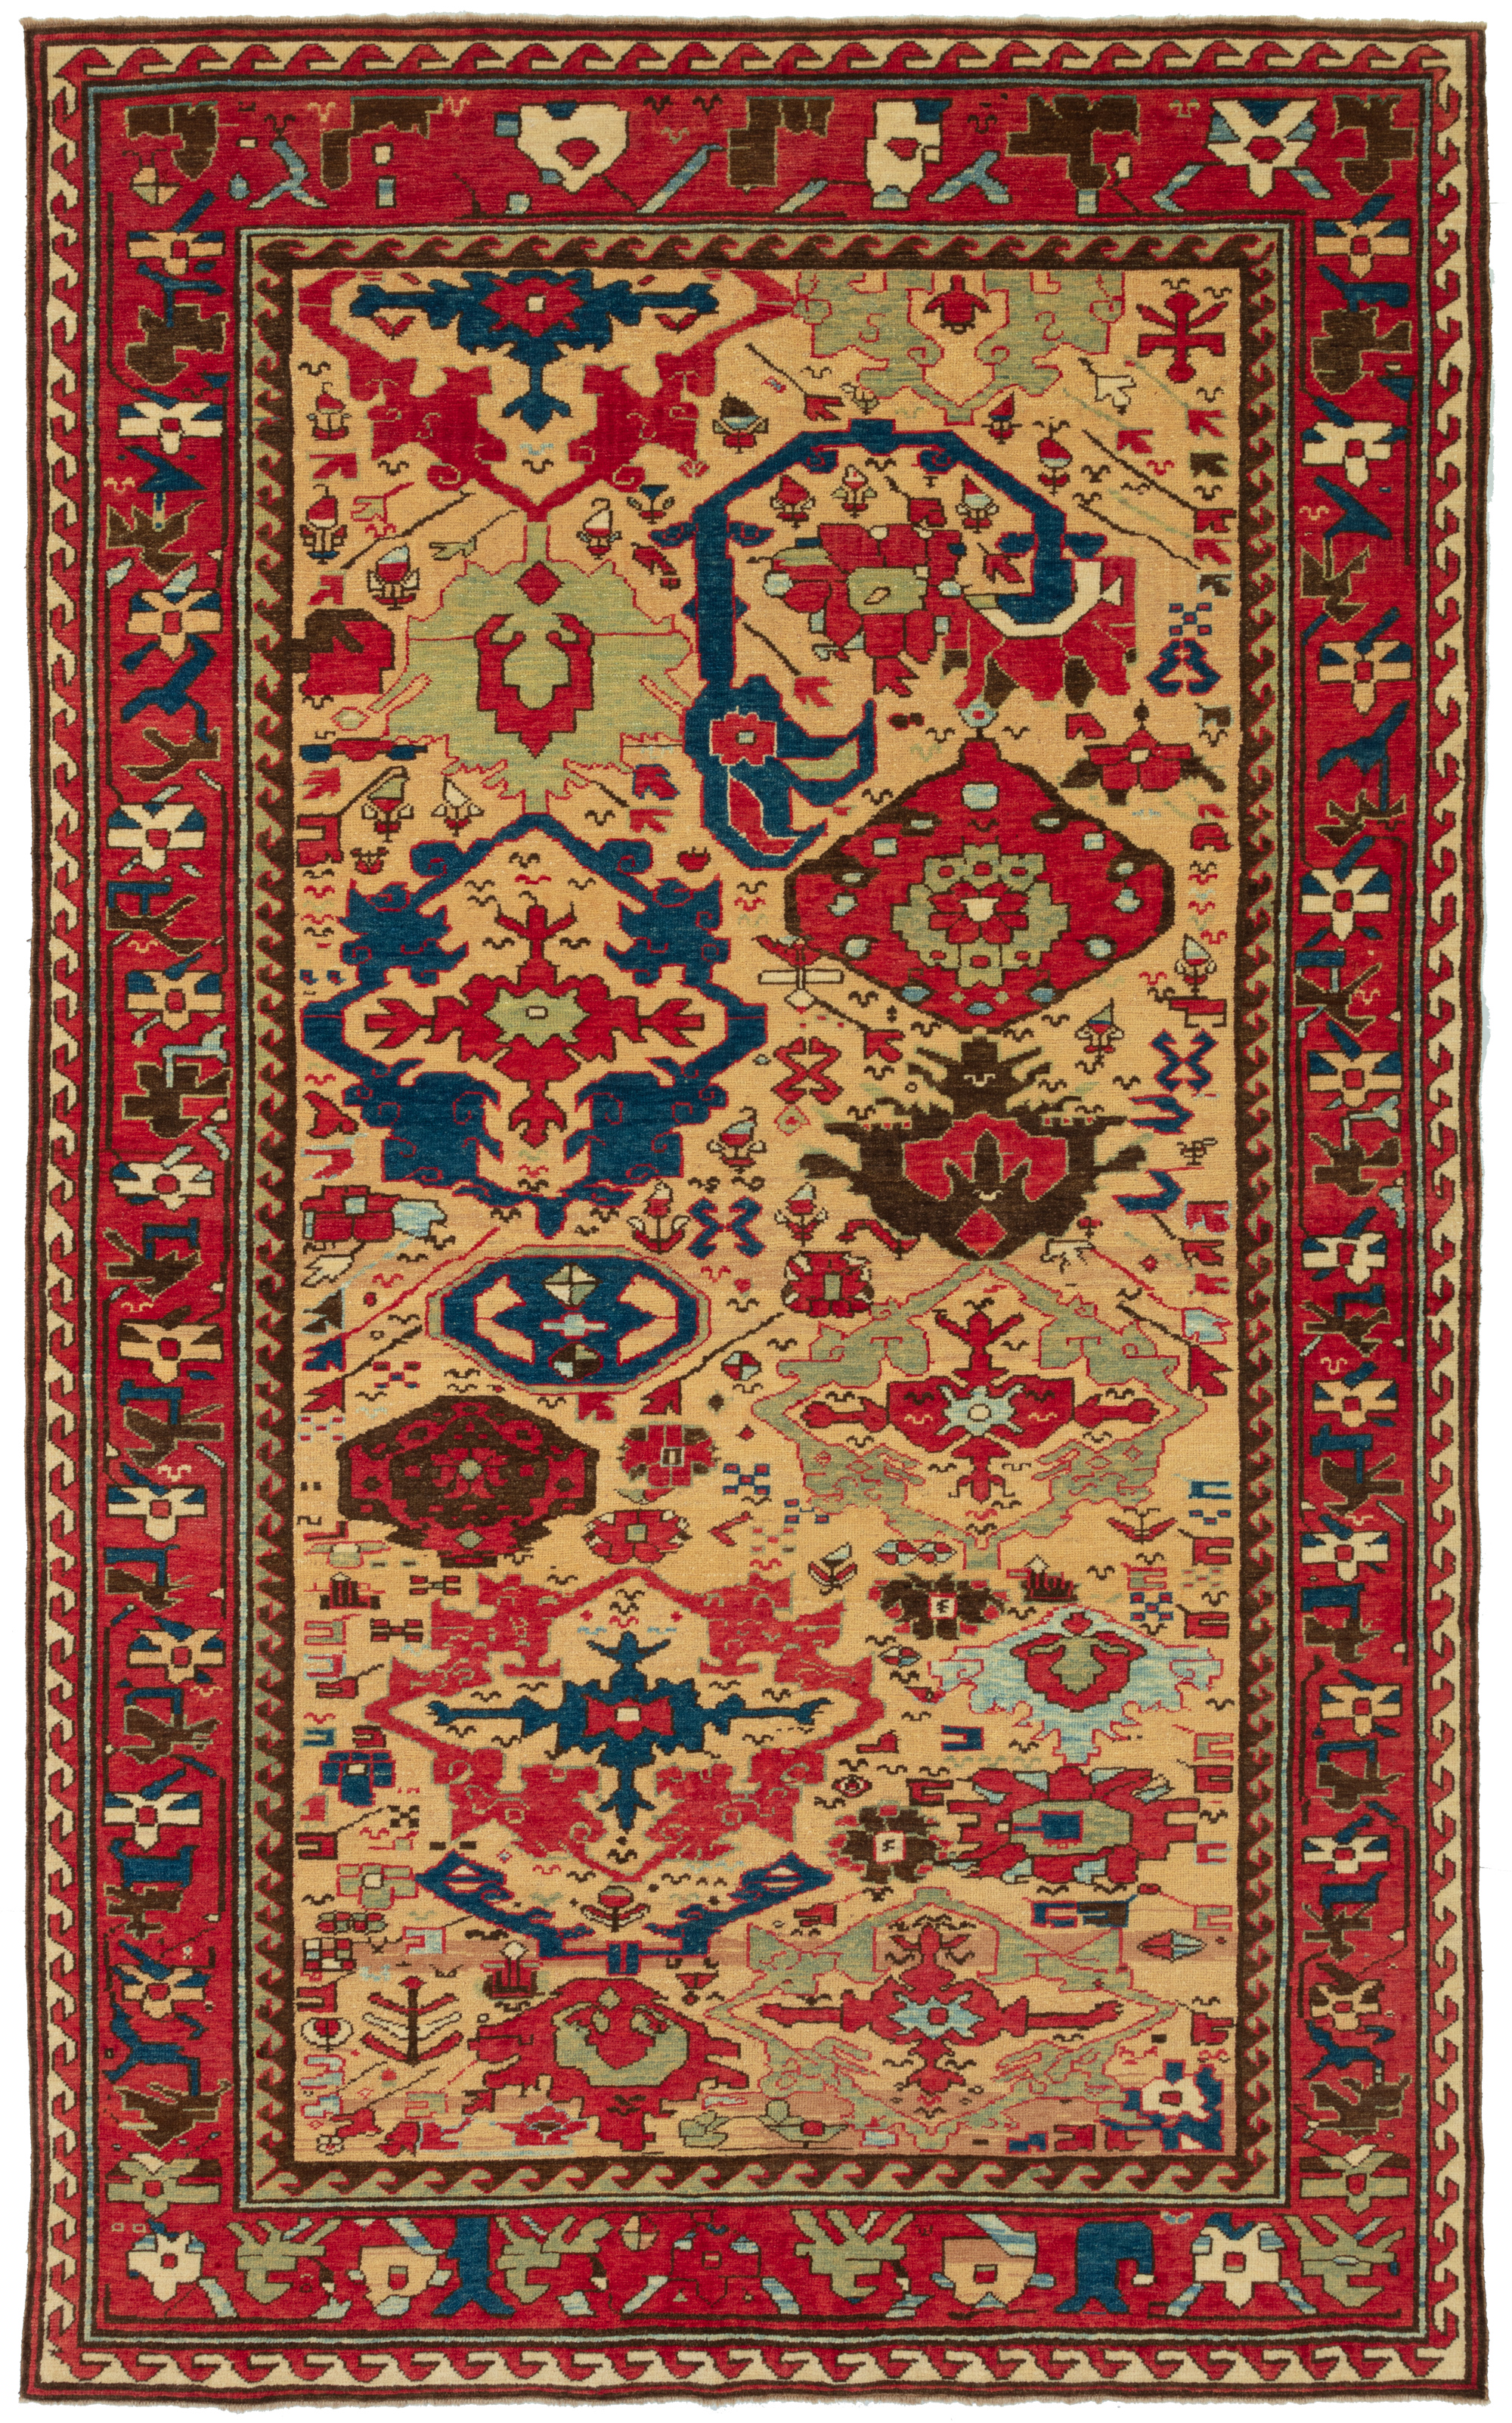 アゼルバイジャン・ハルシャンデザインの絨毯 Azerbaijan Harshang